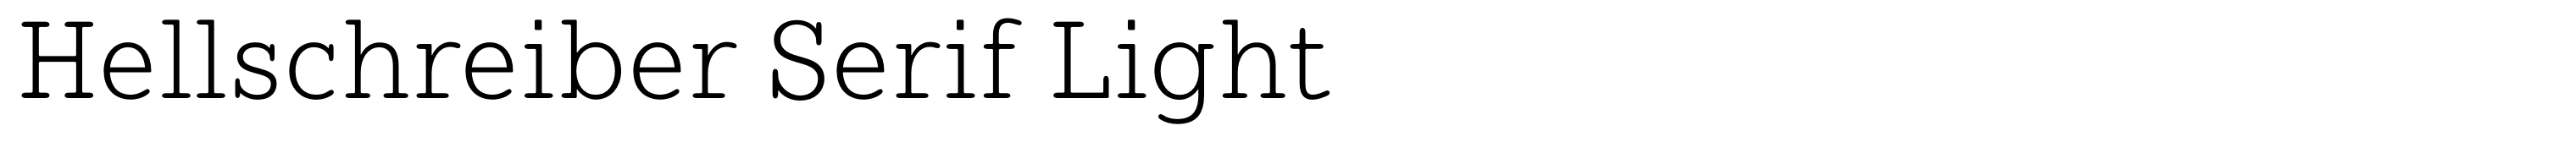 Hellschreiber Serif Light